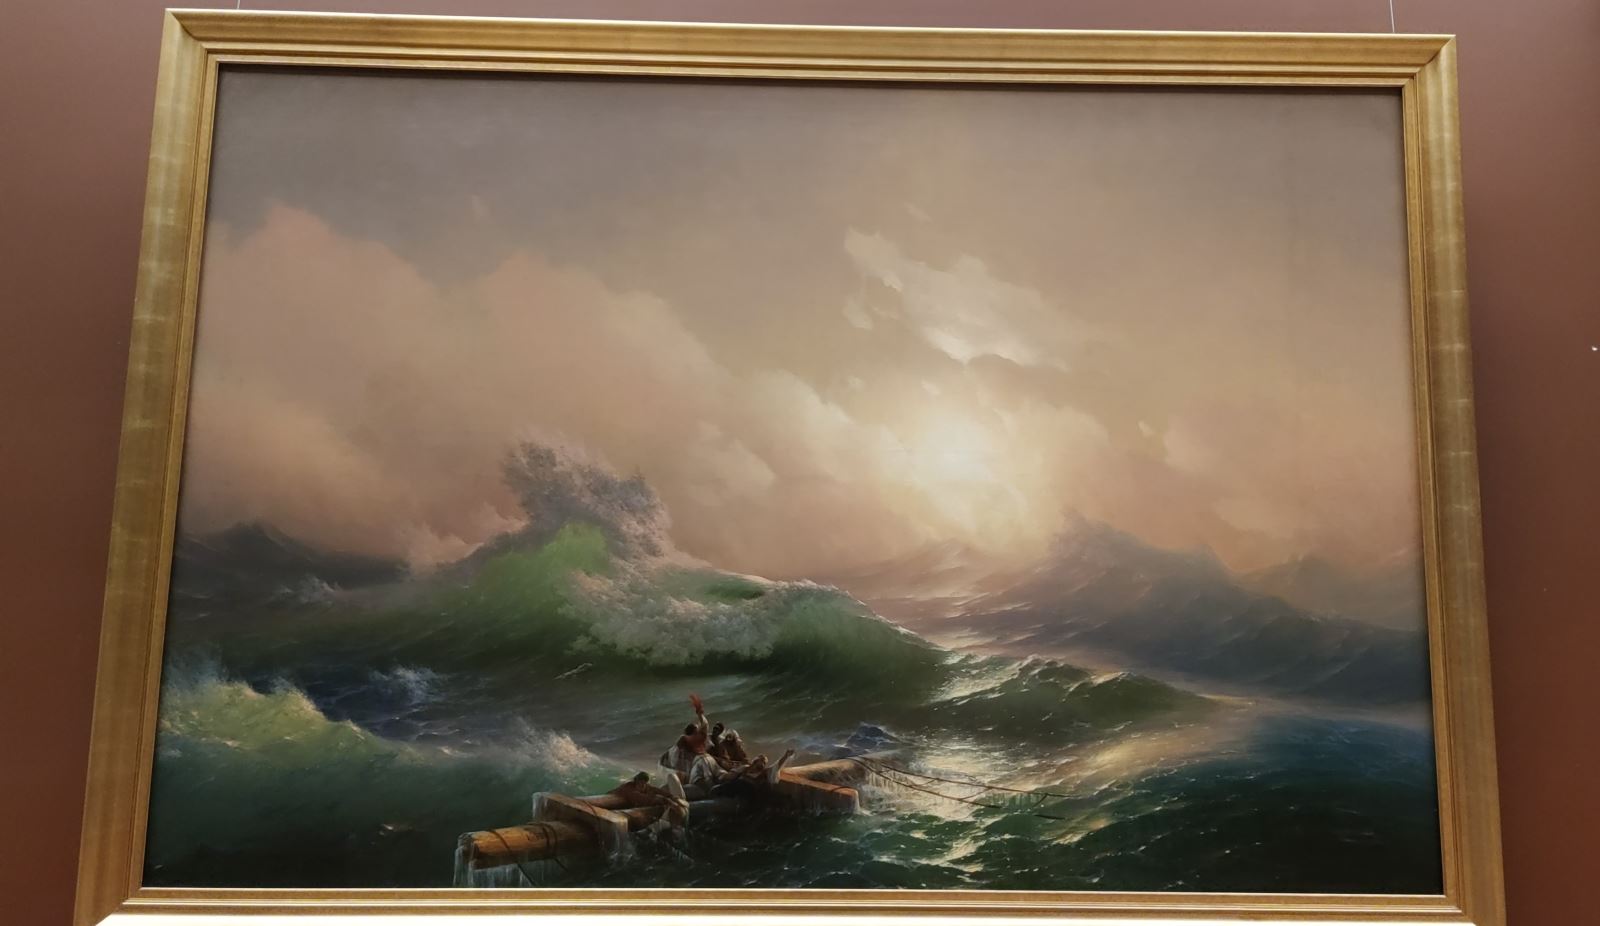 Bức tranh “Cơn sóng thứ chín” nổi tiếng của Aivazovsky.